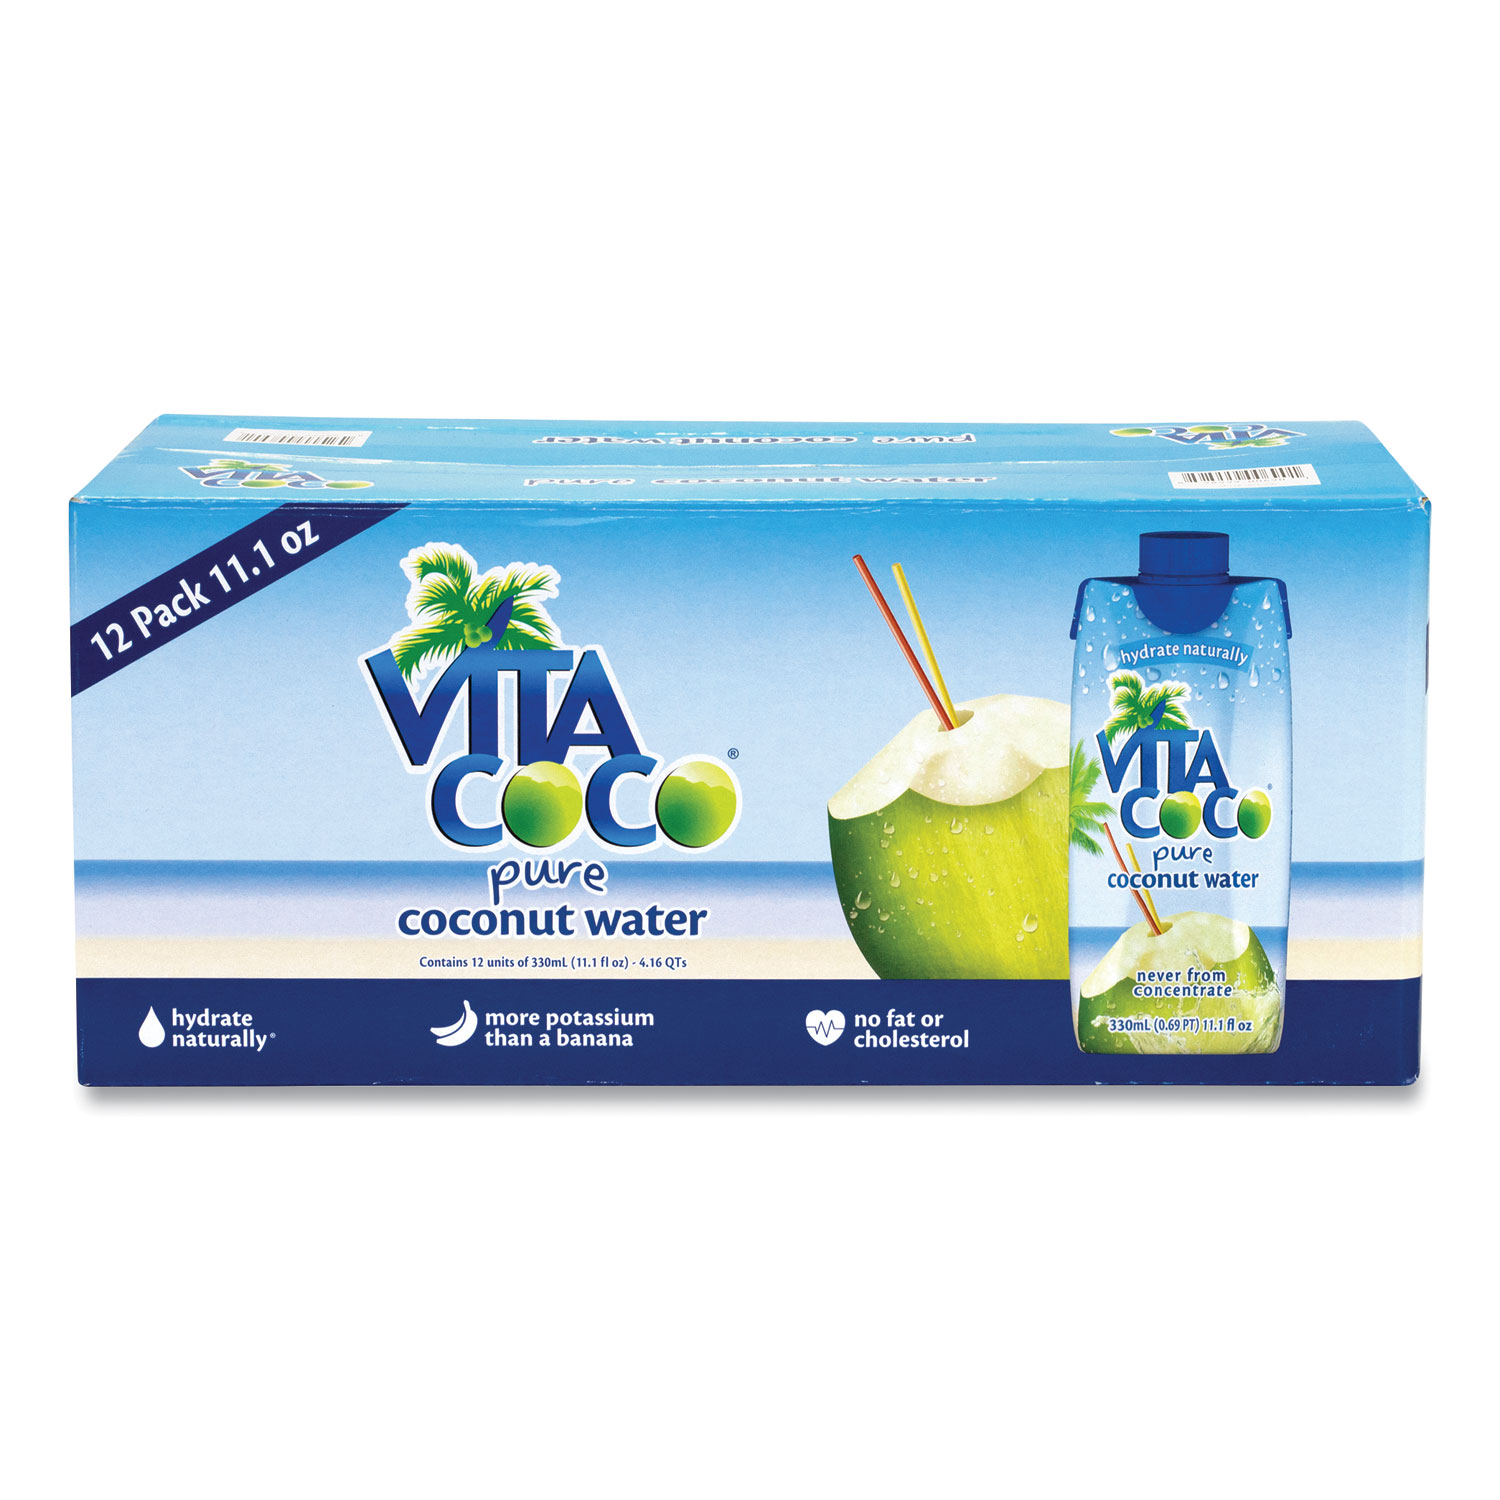  Vita Coco 690 Pure Coconut Water, 11.1 oz Box, 12/Box, Free Delivery in 1-4 Business Days (GRR90000089) 